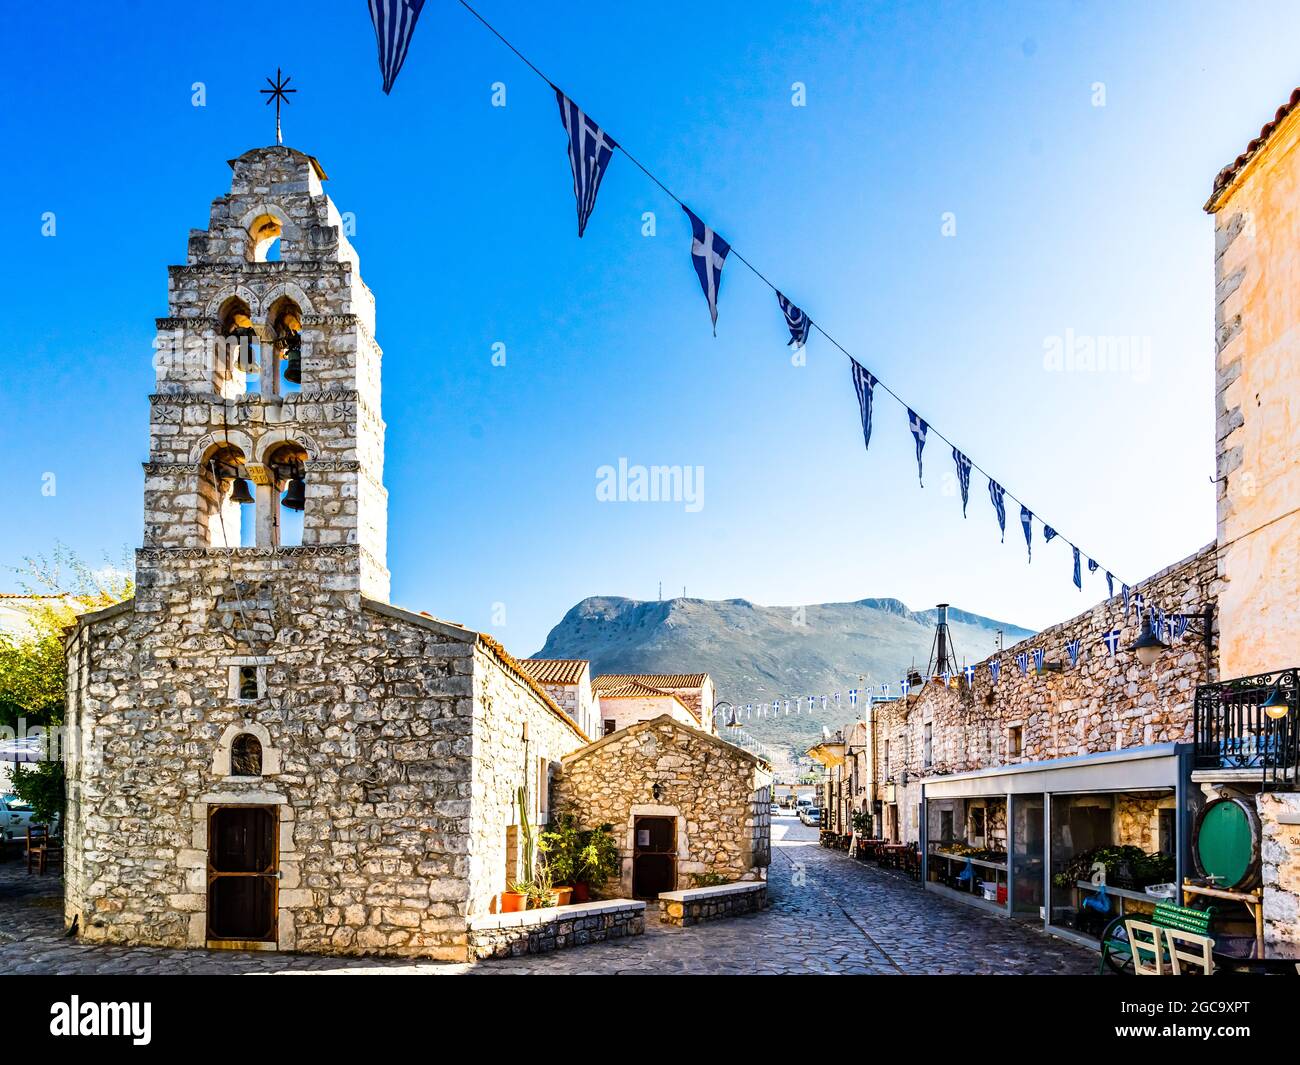 La città di Areopoli con edifici architettonici tradizionali e case in pietra a Laconia, Peloponneso Grecia Foto Stock